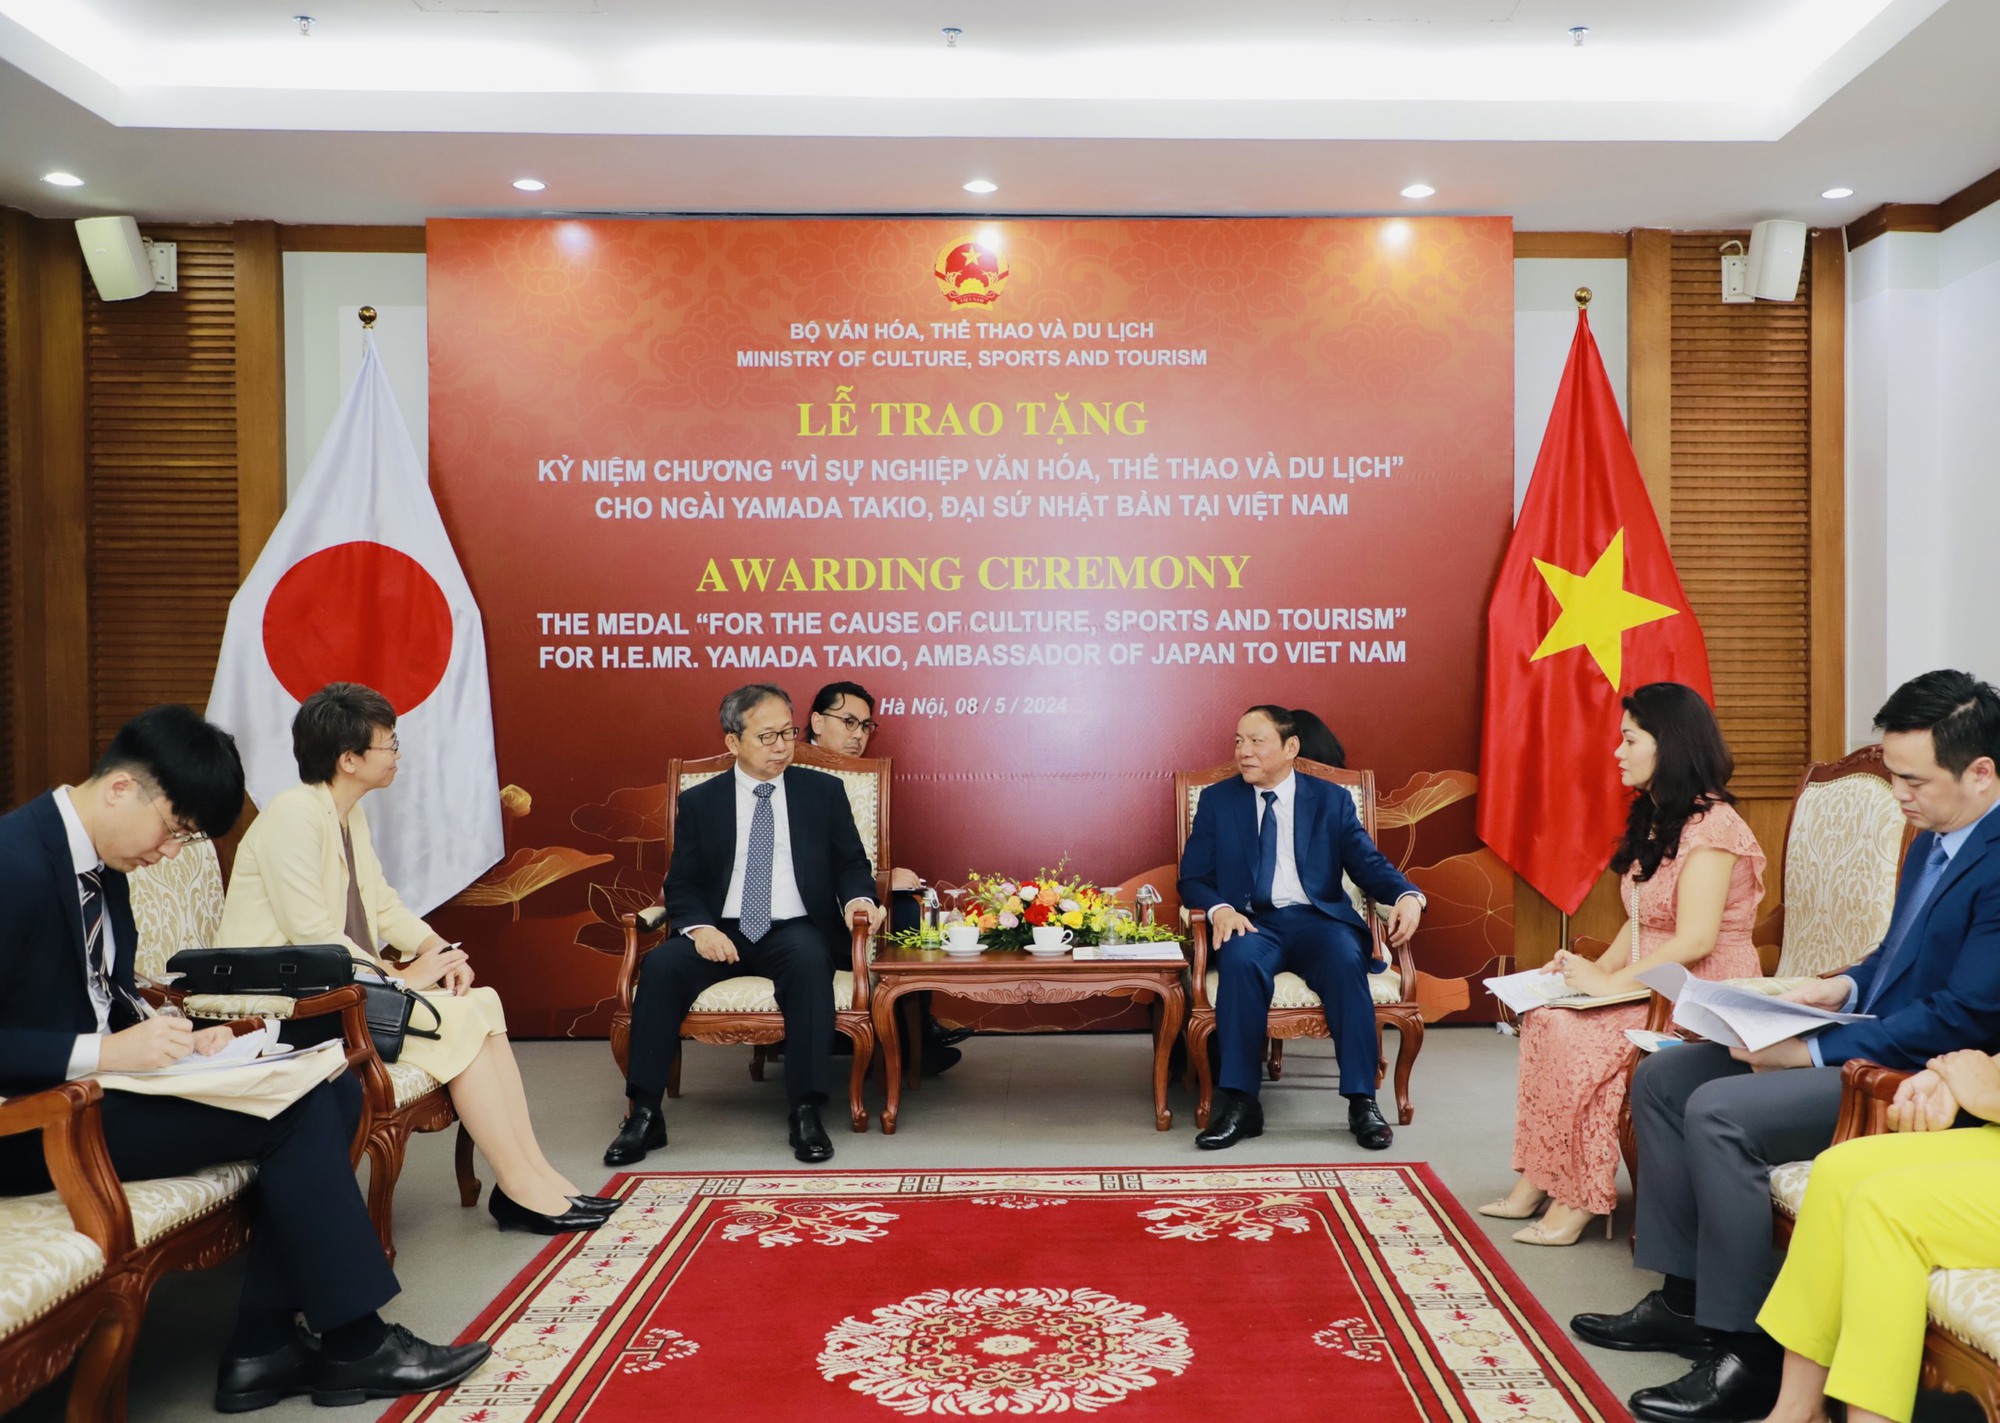 Bộ trưởng Nguyễn Văn Hùng: Đề cao sự tương đồng văn hóa để xây dựng mối quan hệ tốt đẹp, nhân lên khát vọng hòa bình - Ảnh 1.